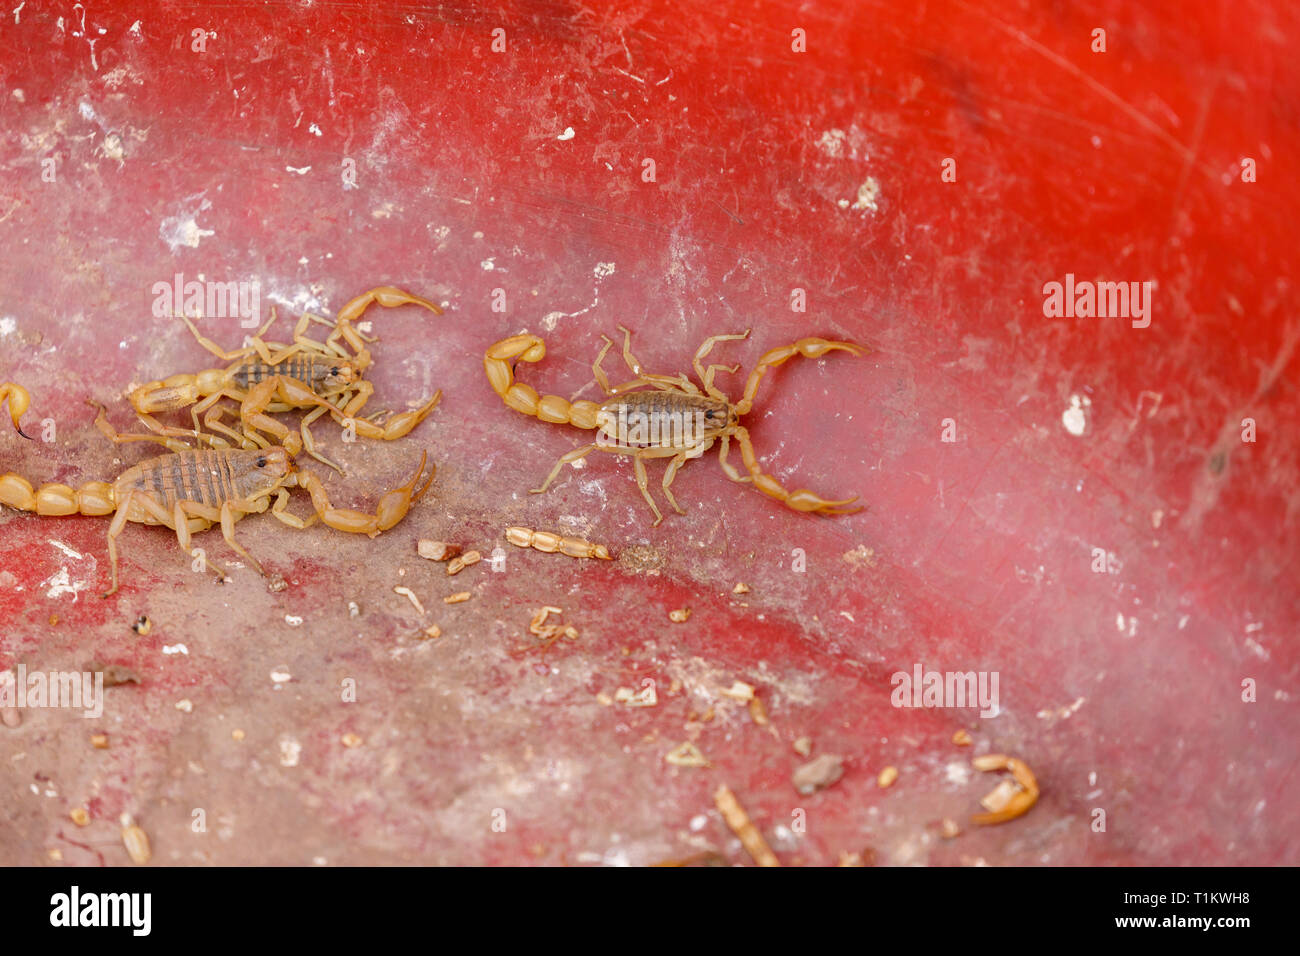 KASHGAR, XINJIANG / CHINA - October 1, 2017: Three scorpions in a plastic tub - captured at a market in Kashgar. Stock Photo